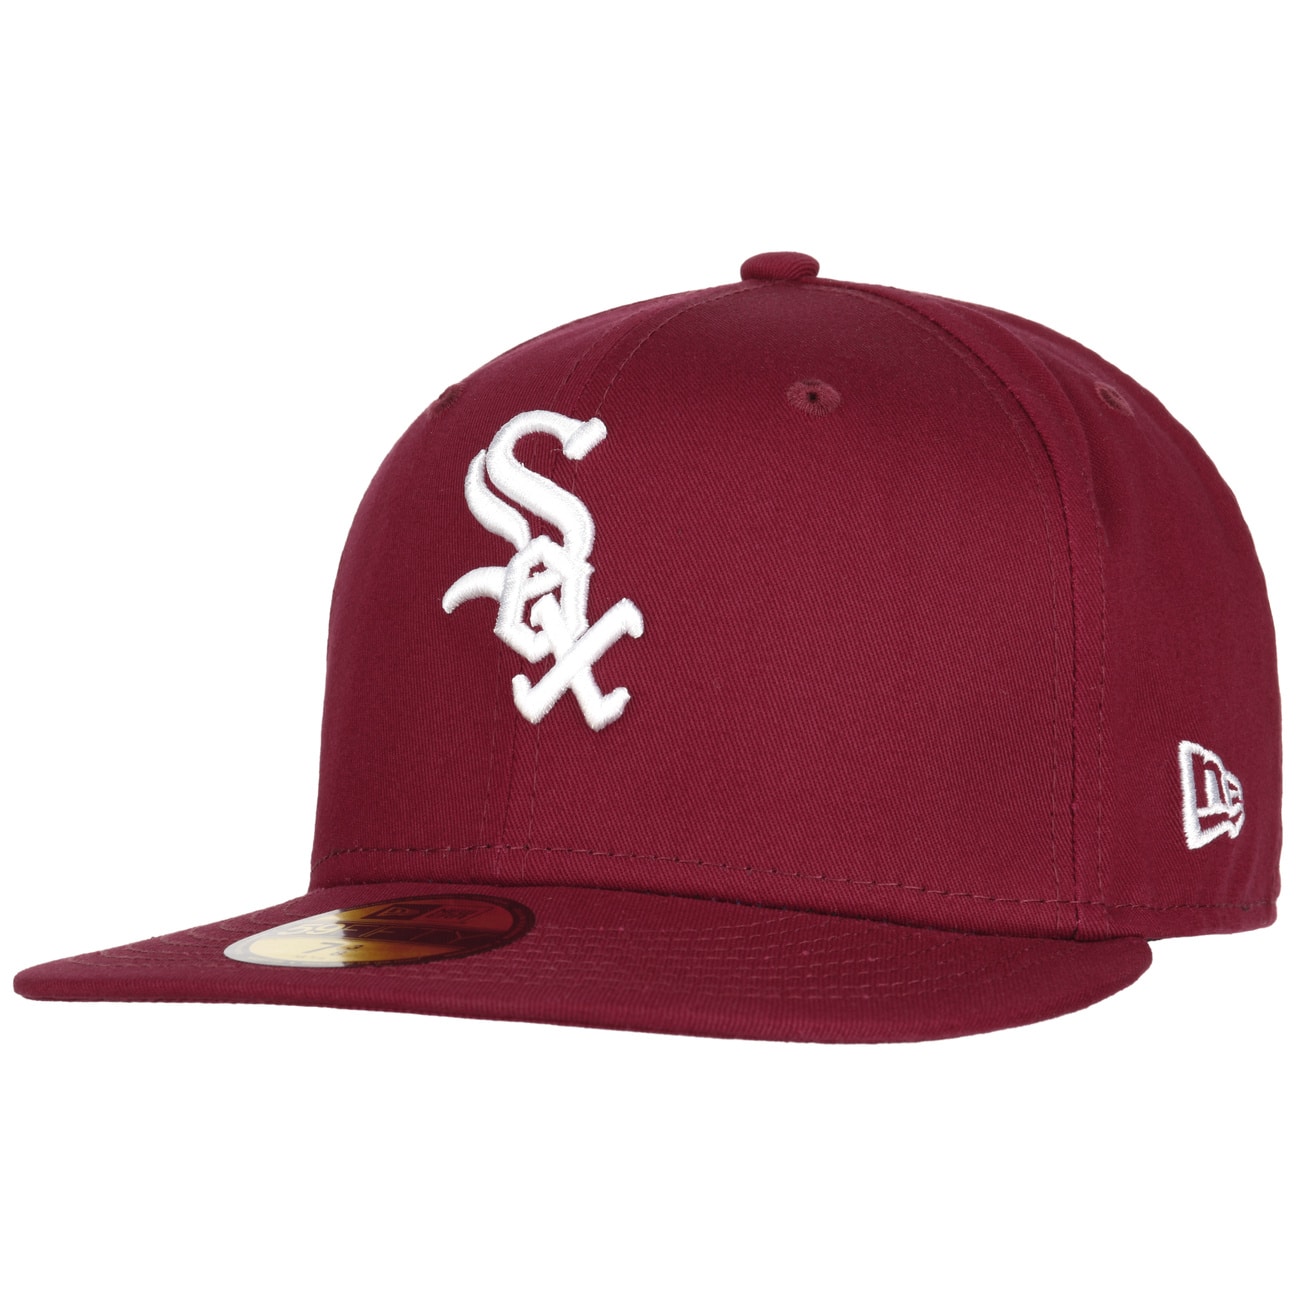 59Fifty White Sox Essential Cap by New Era von new era